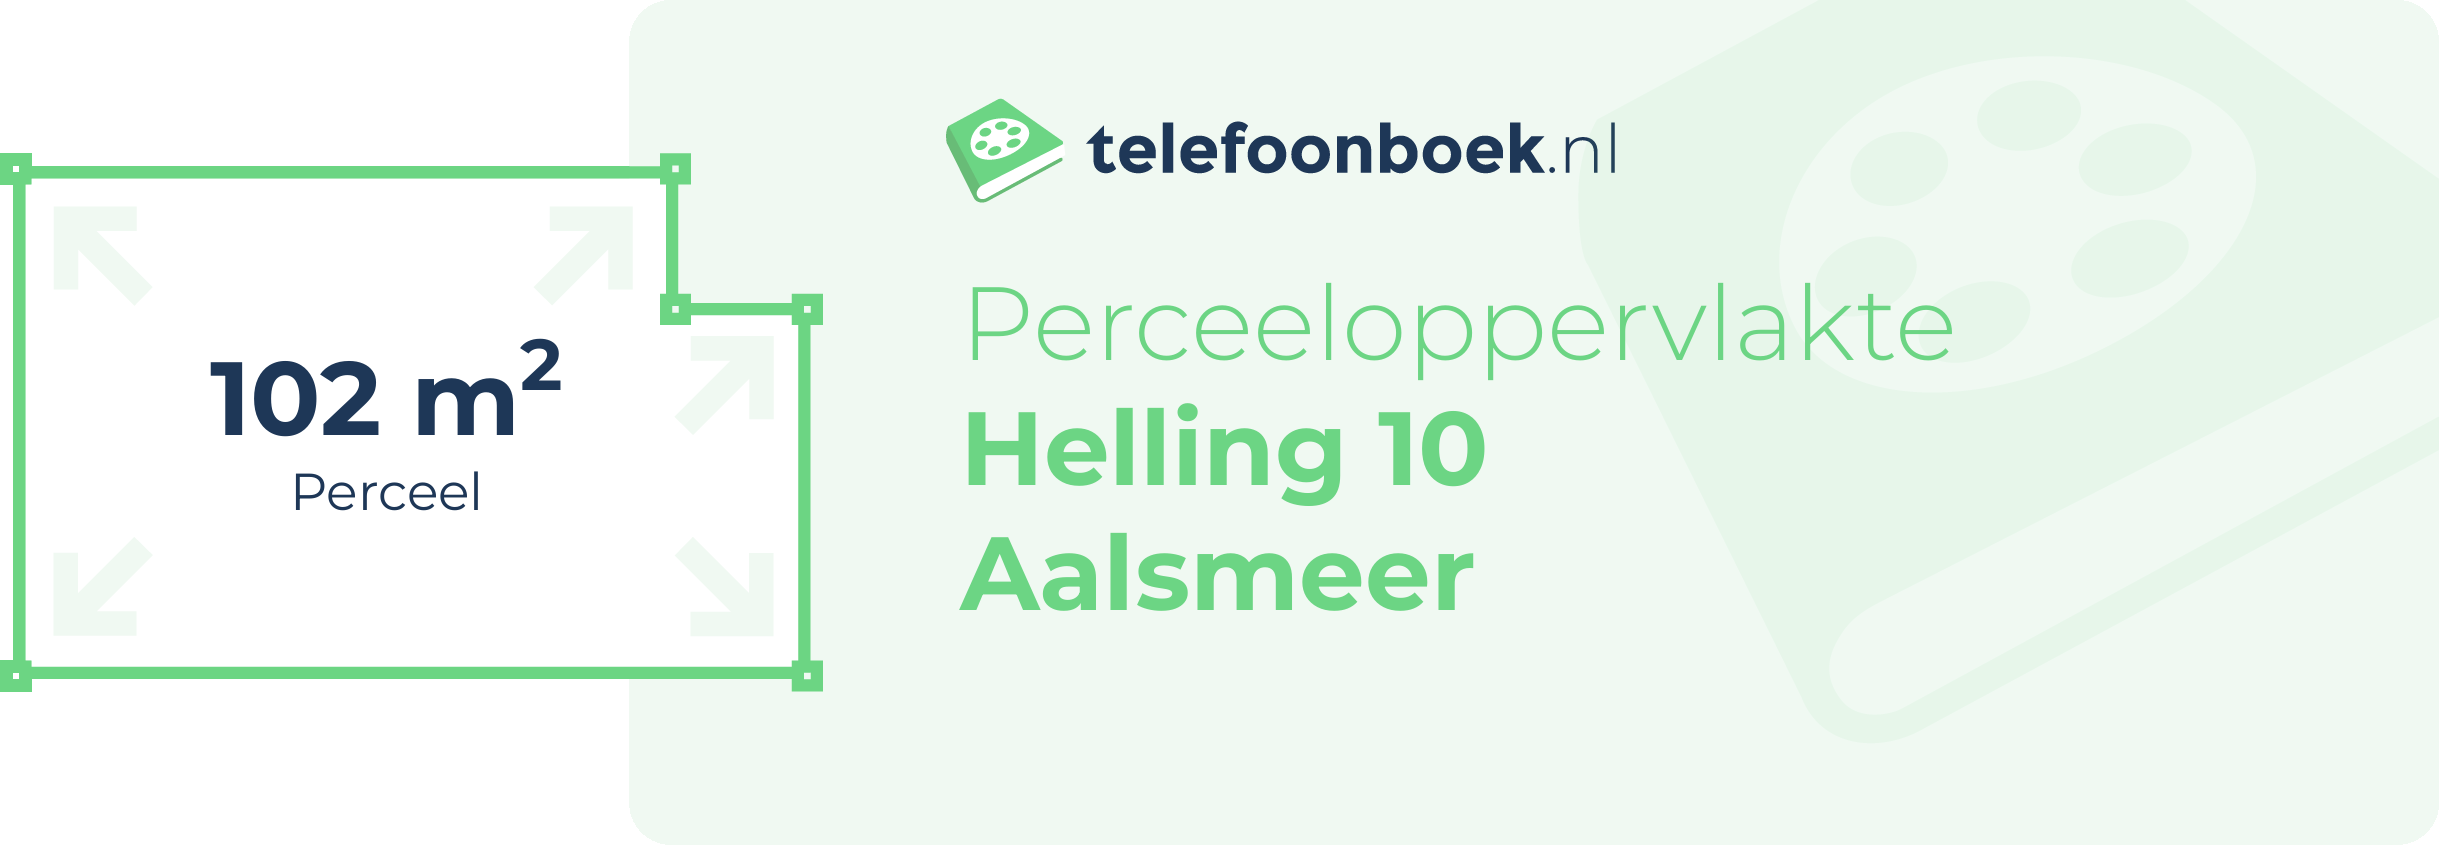 Perceeloppervlakte Helling 10 Aalsmeer